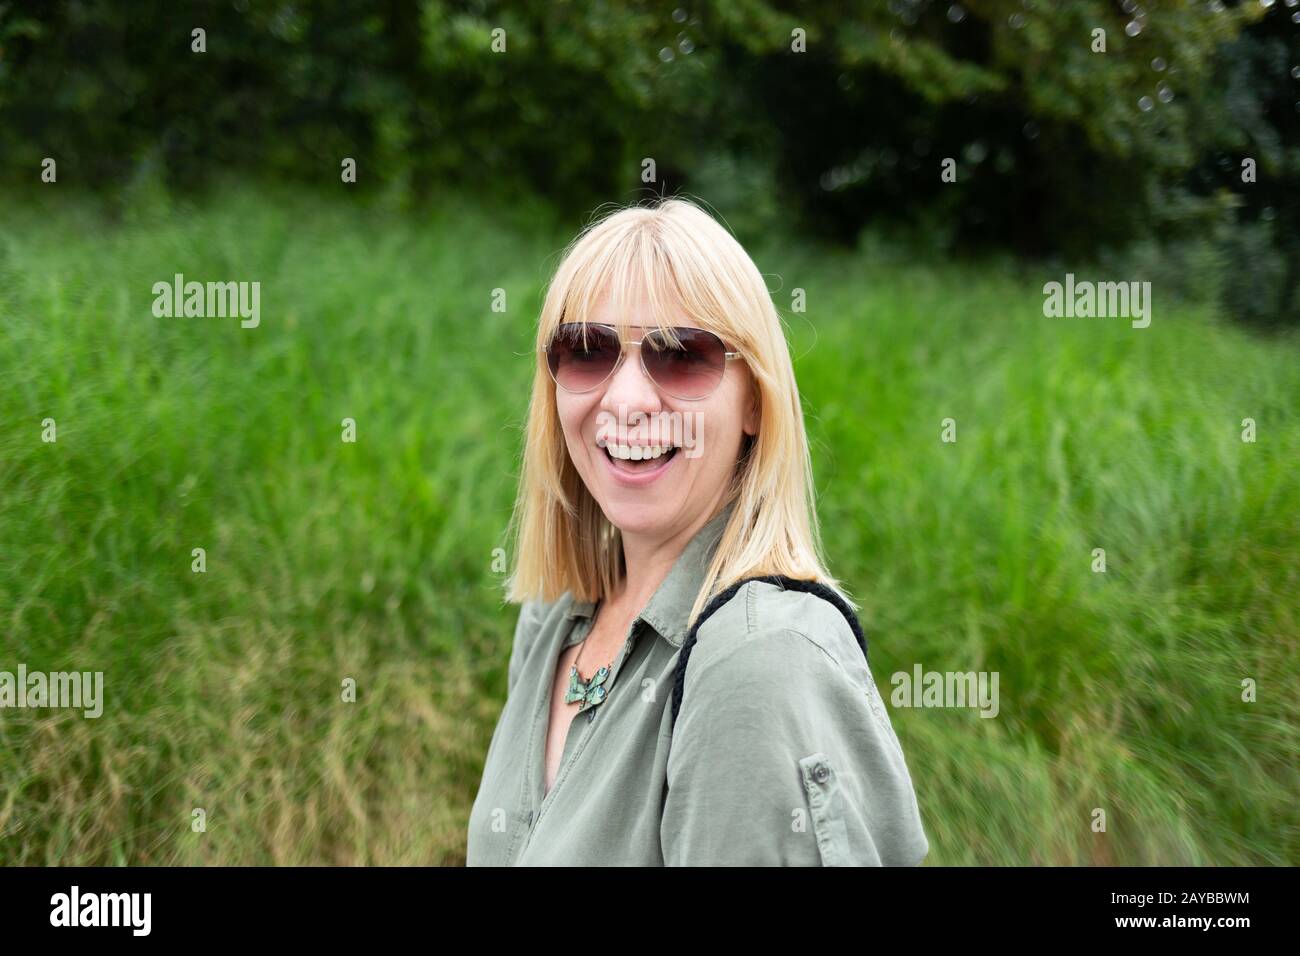 Une femme blonde heureuse souriant devant un fond naturel vert. Été, plein air et style de vie co Banque D'Images